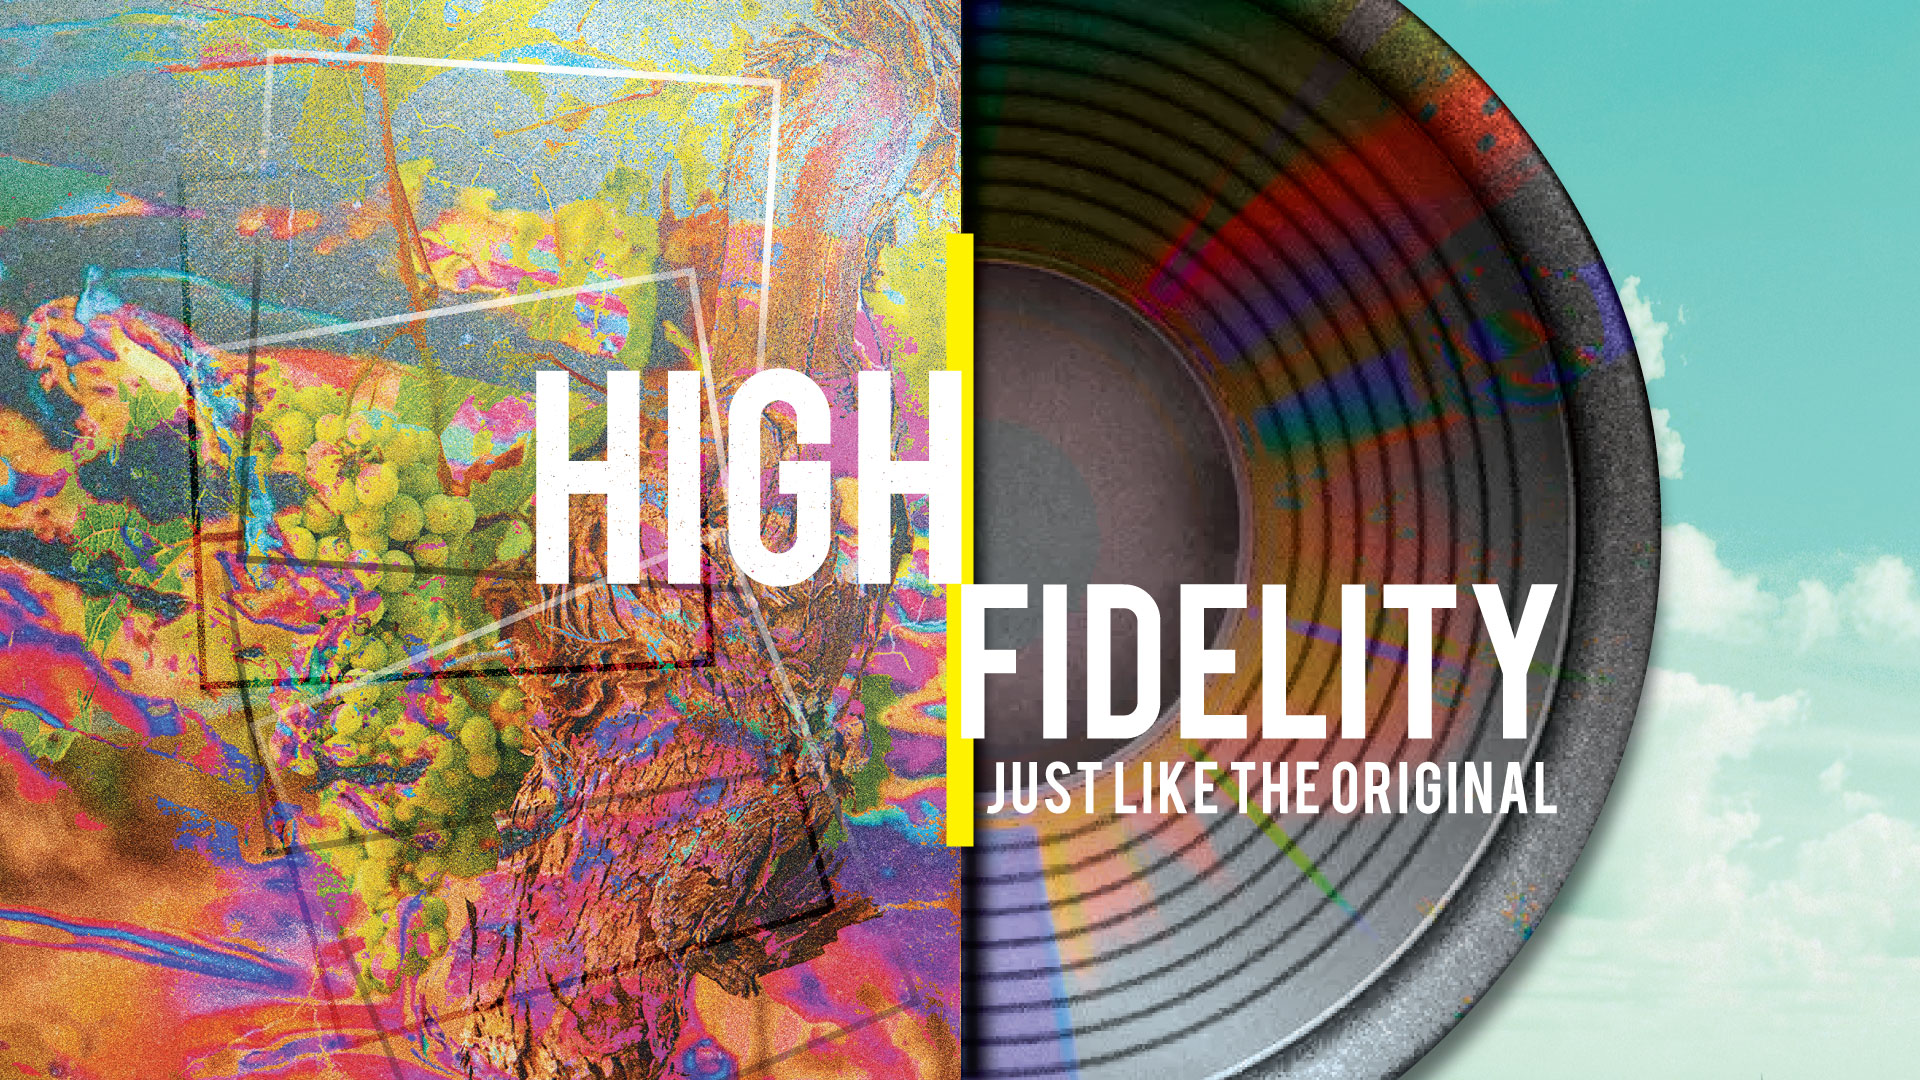 High Fidelity banner